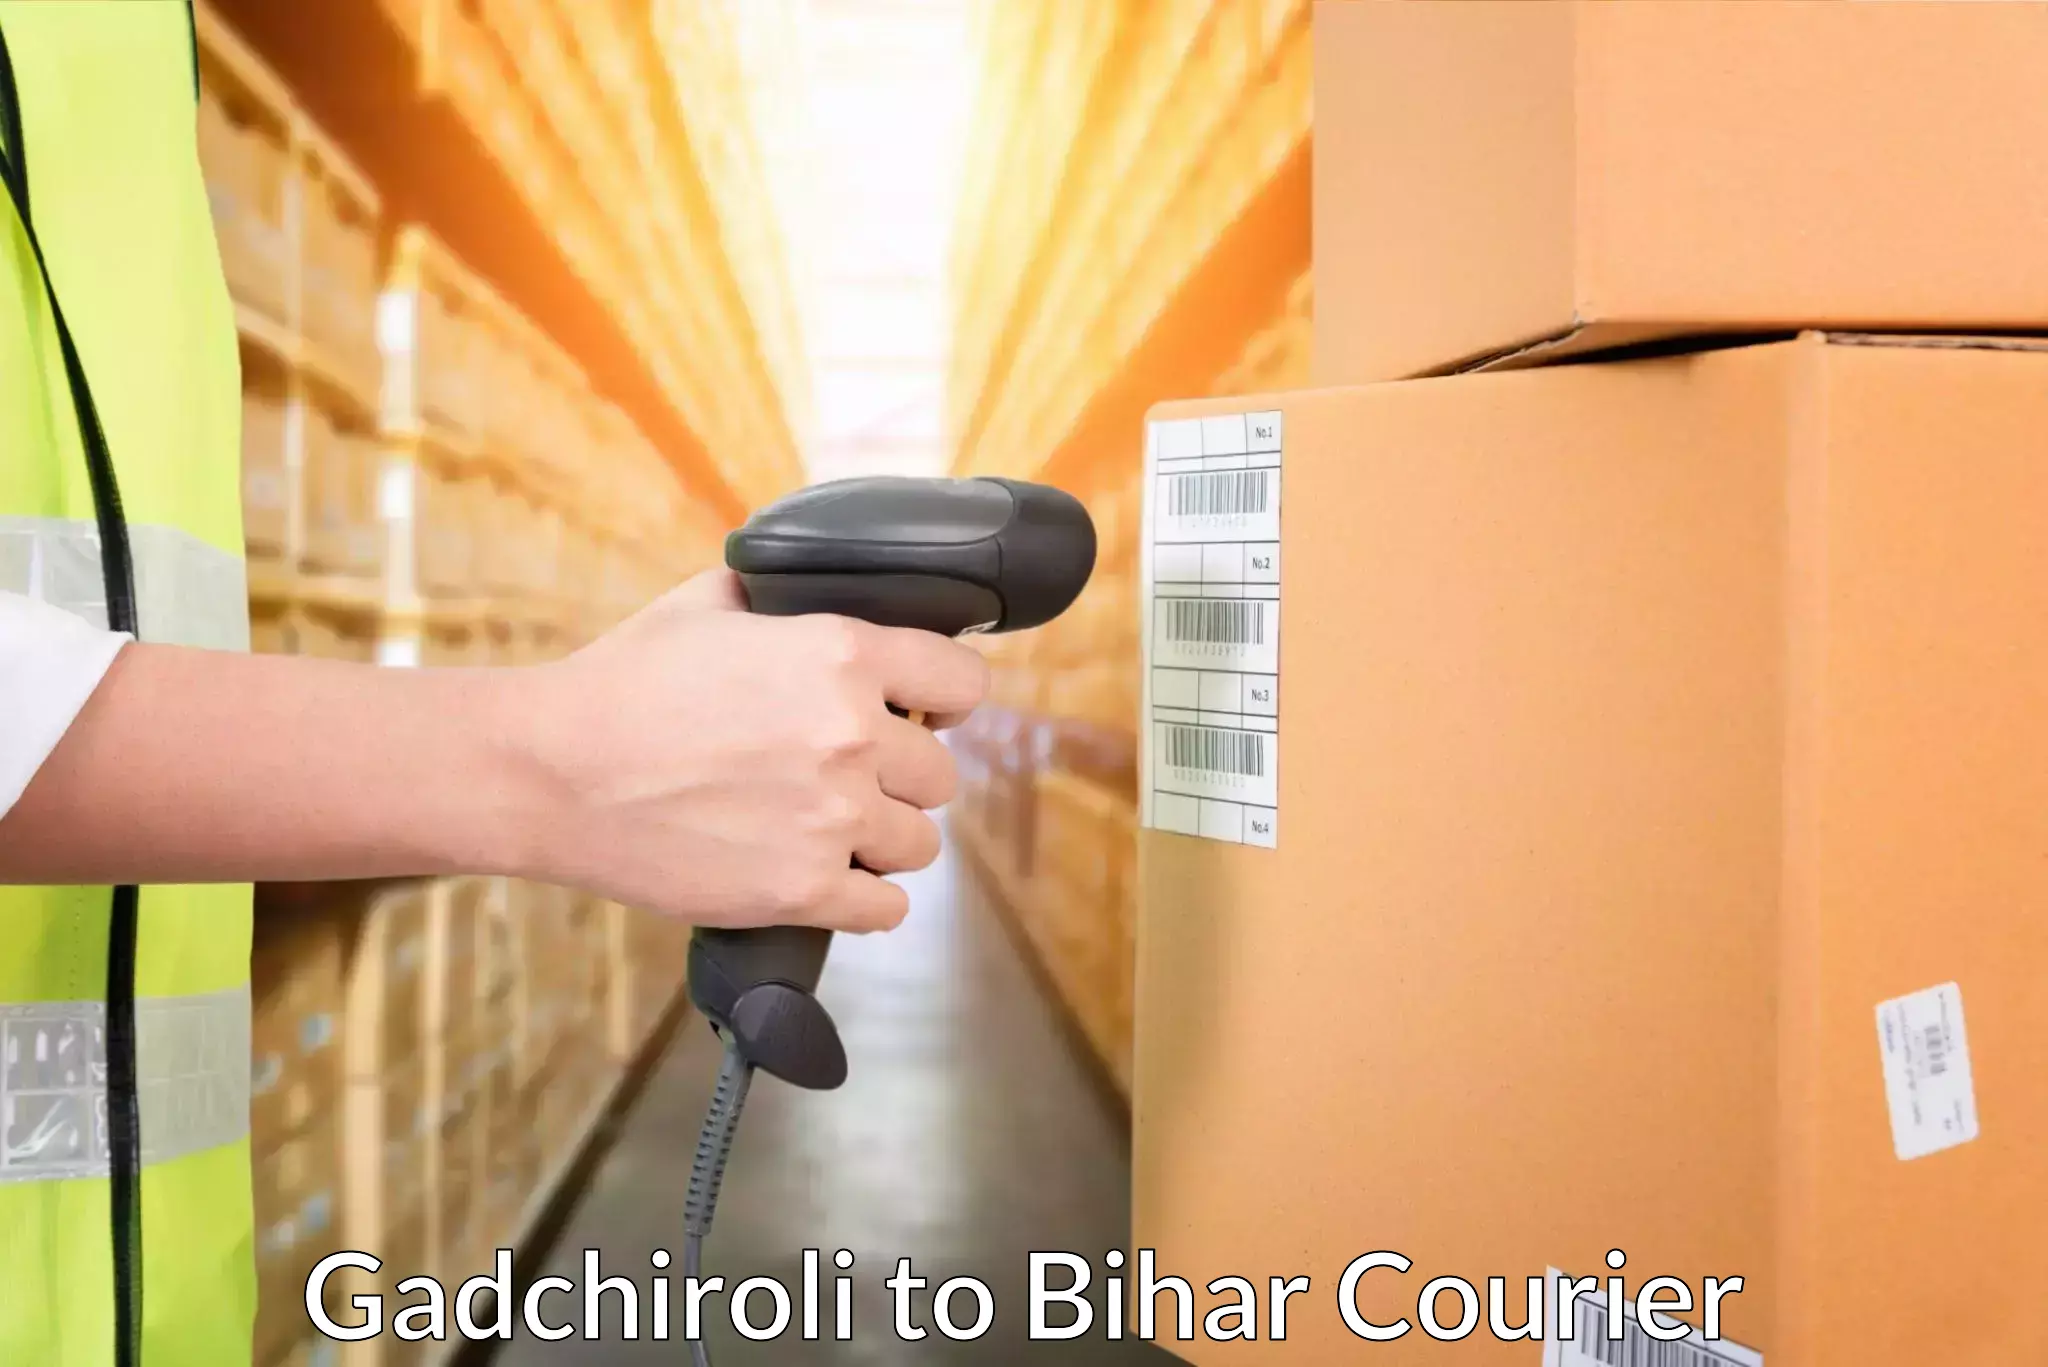 Modern courier technology Gadchiroli to Bihar